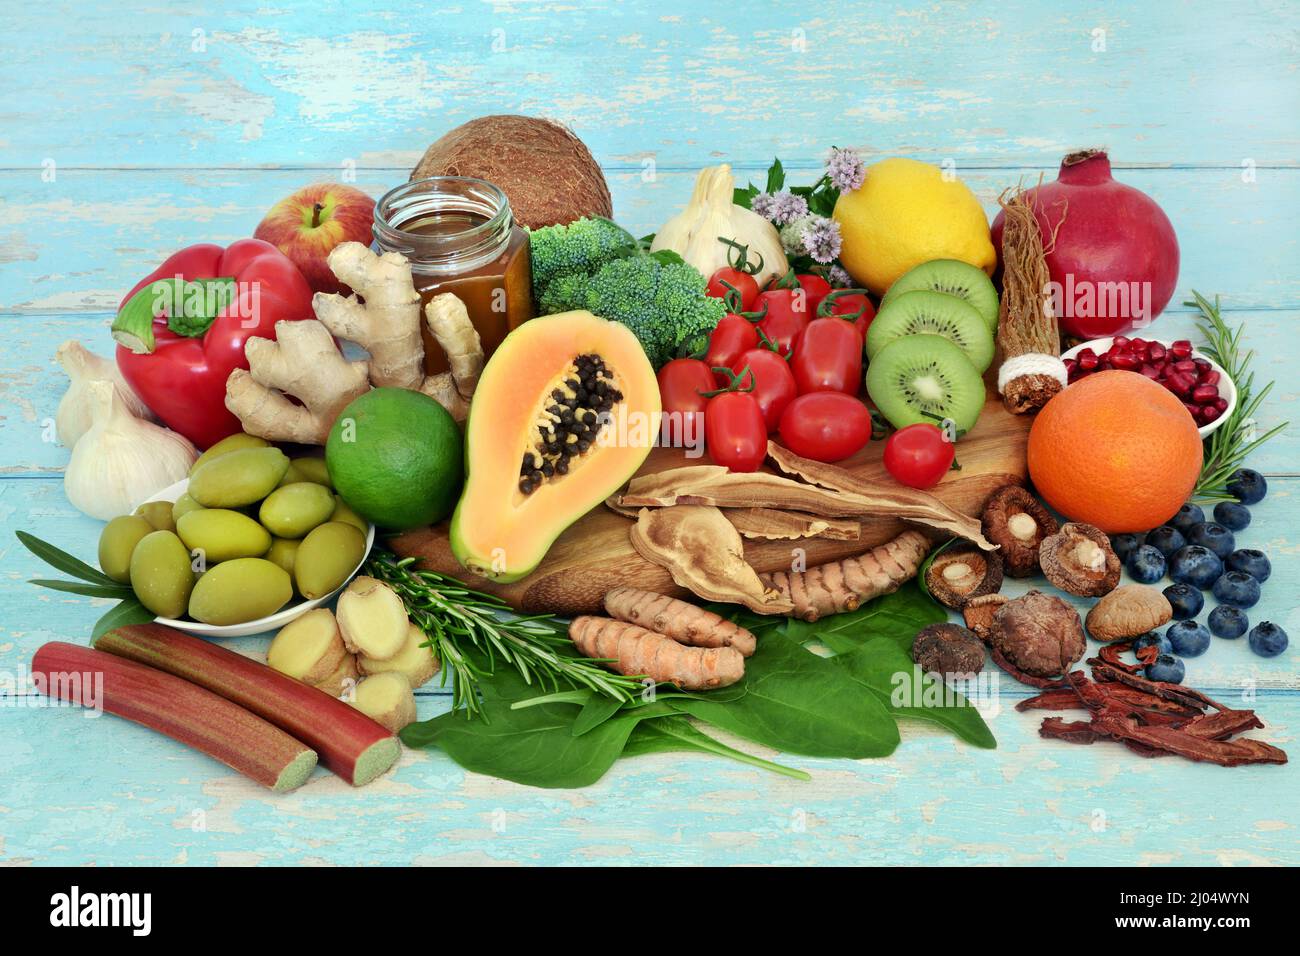 Cibo vegetariano per il supporto del sistema immunitario, verdure, frutta, miele, erbe, spezia. Alimenti sani ad alto contenuto di antiossidanti, antocianine, proteine. Foto Stock